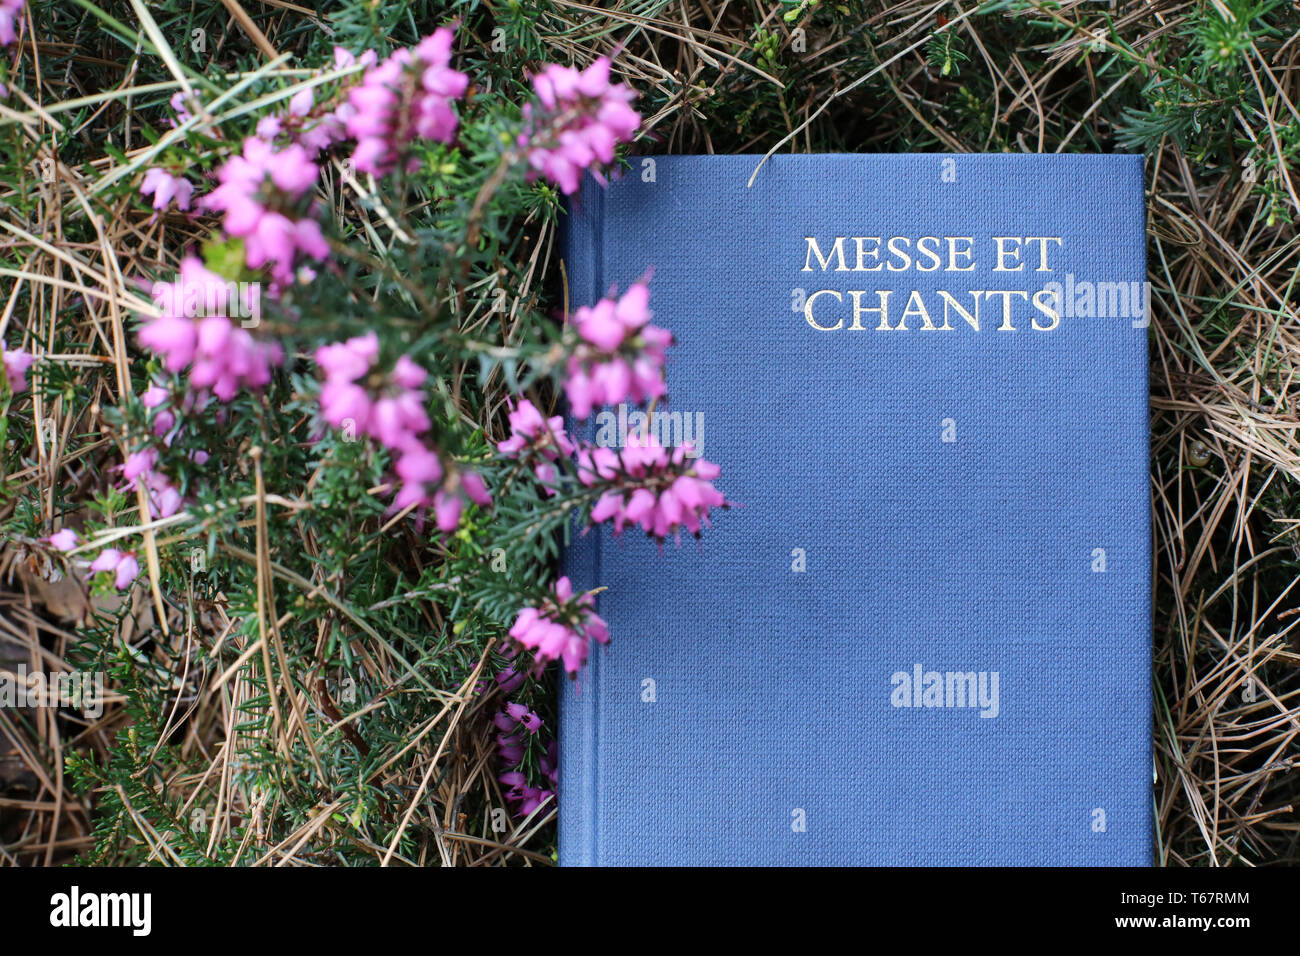 Livre de Messe et Chants dans l'herbe. Stockfoto